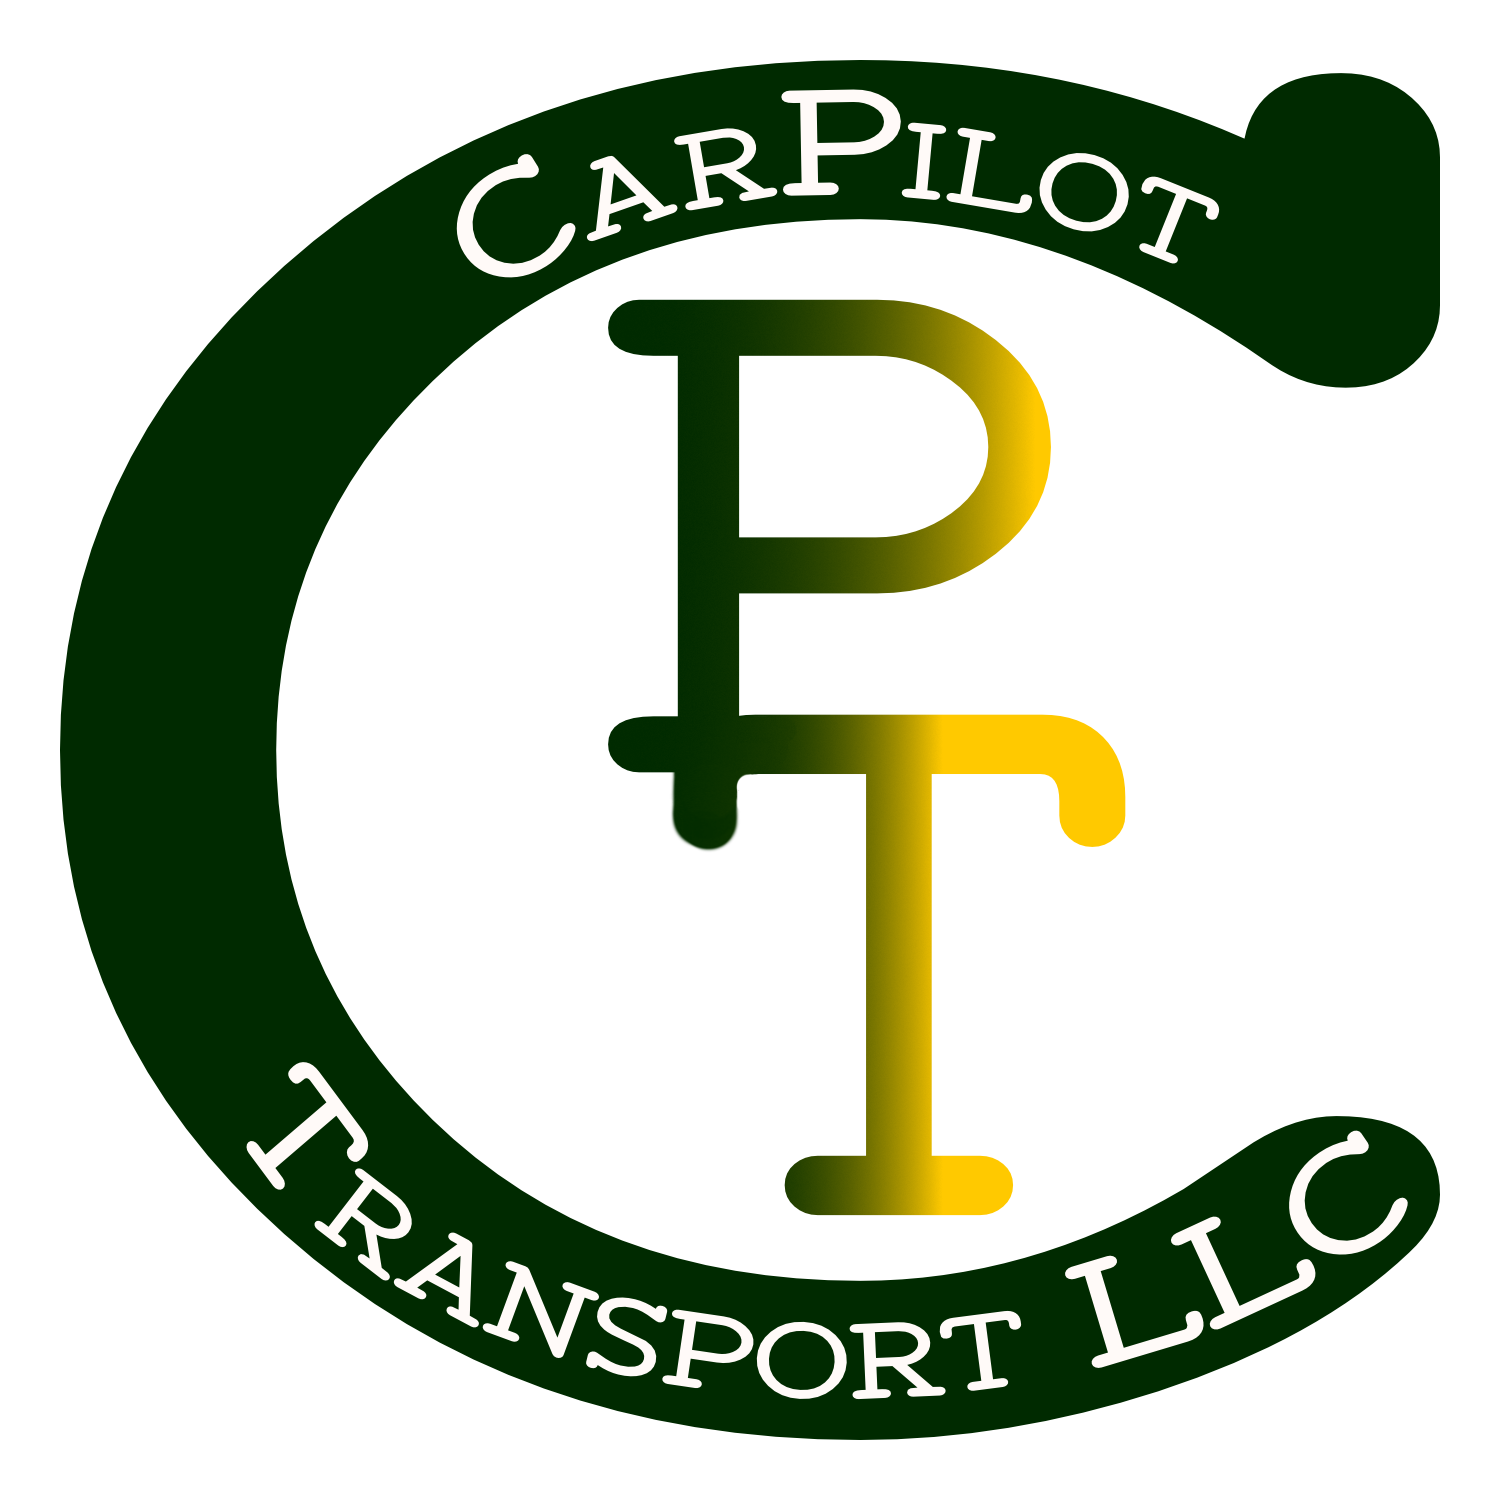 Car Pilot Transport